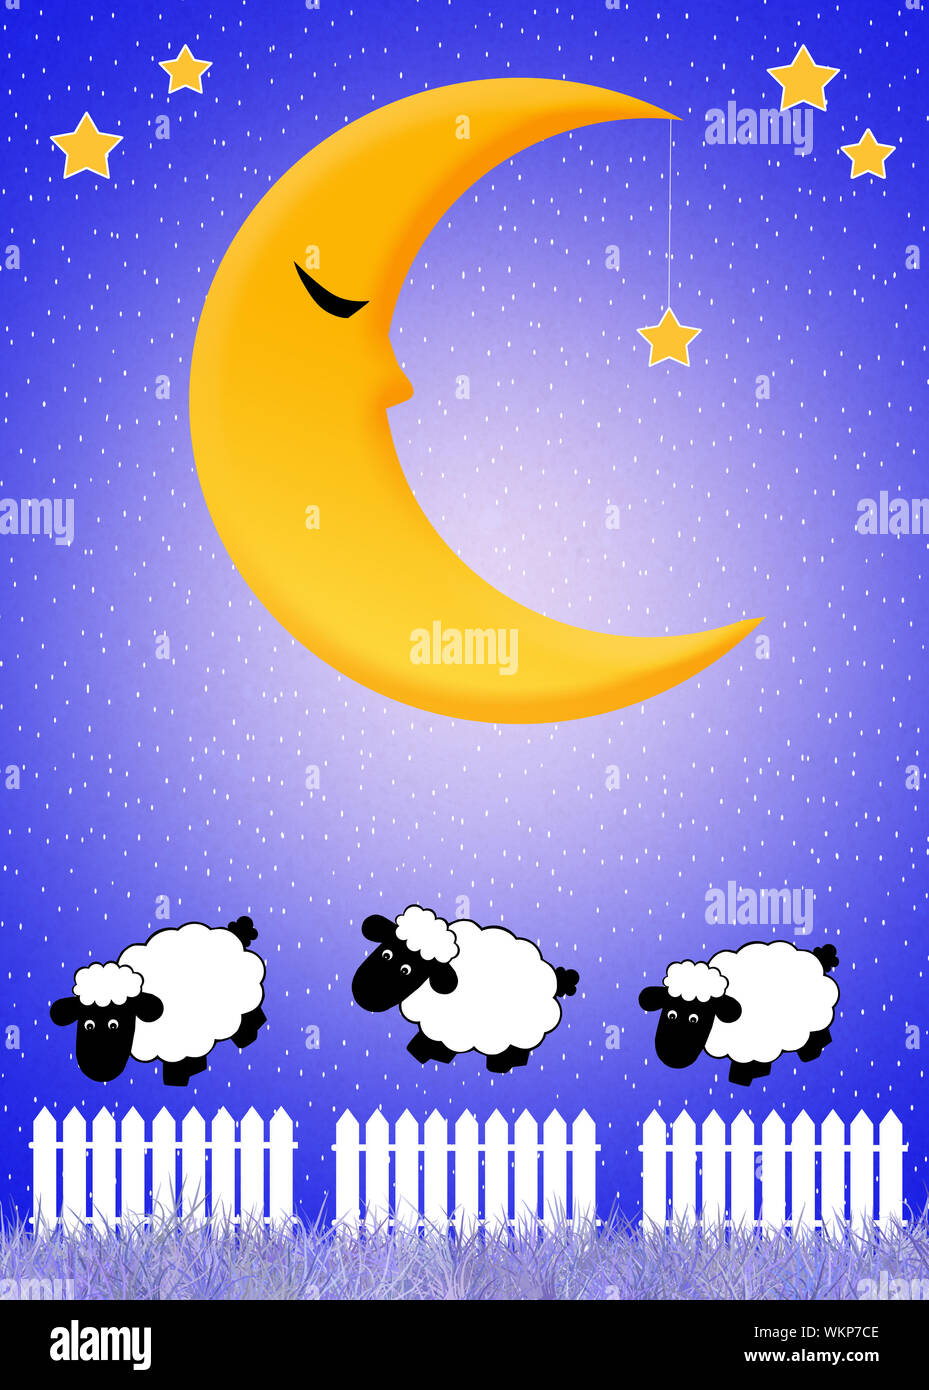 Fais de beaux rêves Photo Stock - Alamy